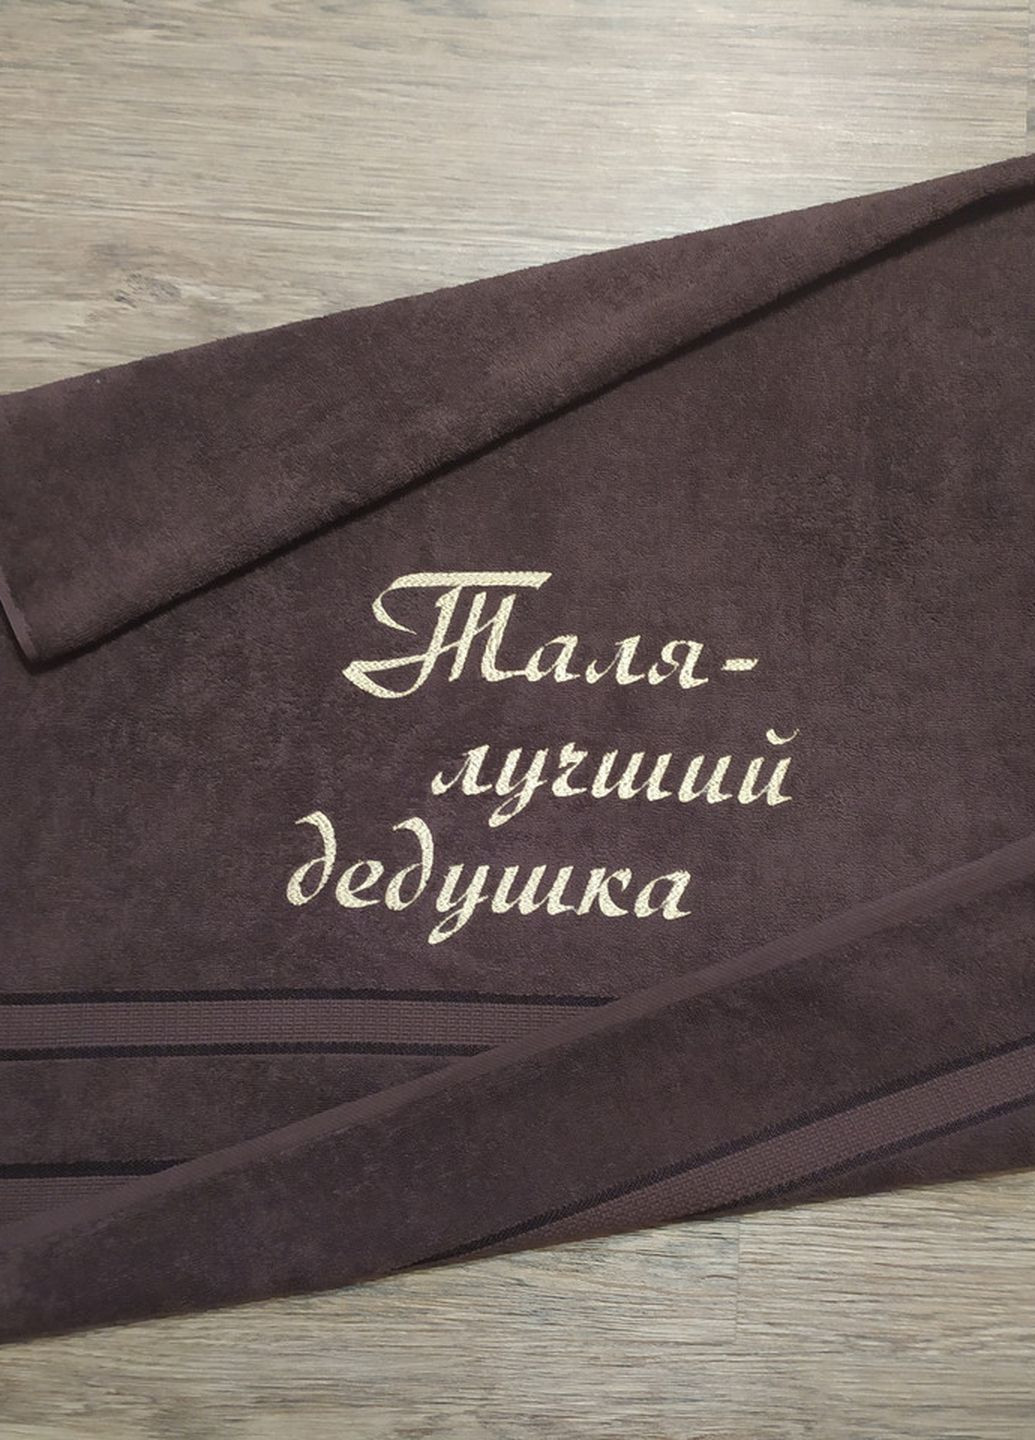 No Brand полотенце с именной вышивкой махровое банное 70*140 темно-коричневый дедушке виталий 00164 однотонный темно-коричневый производство - Украина